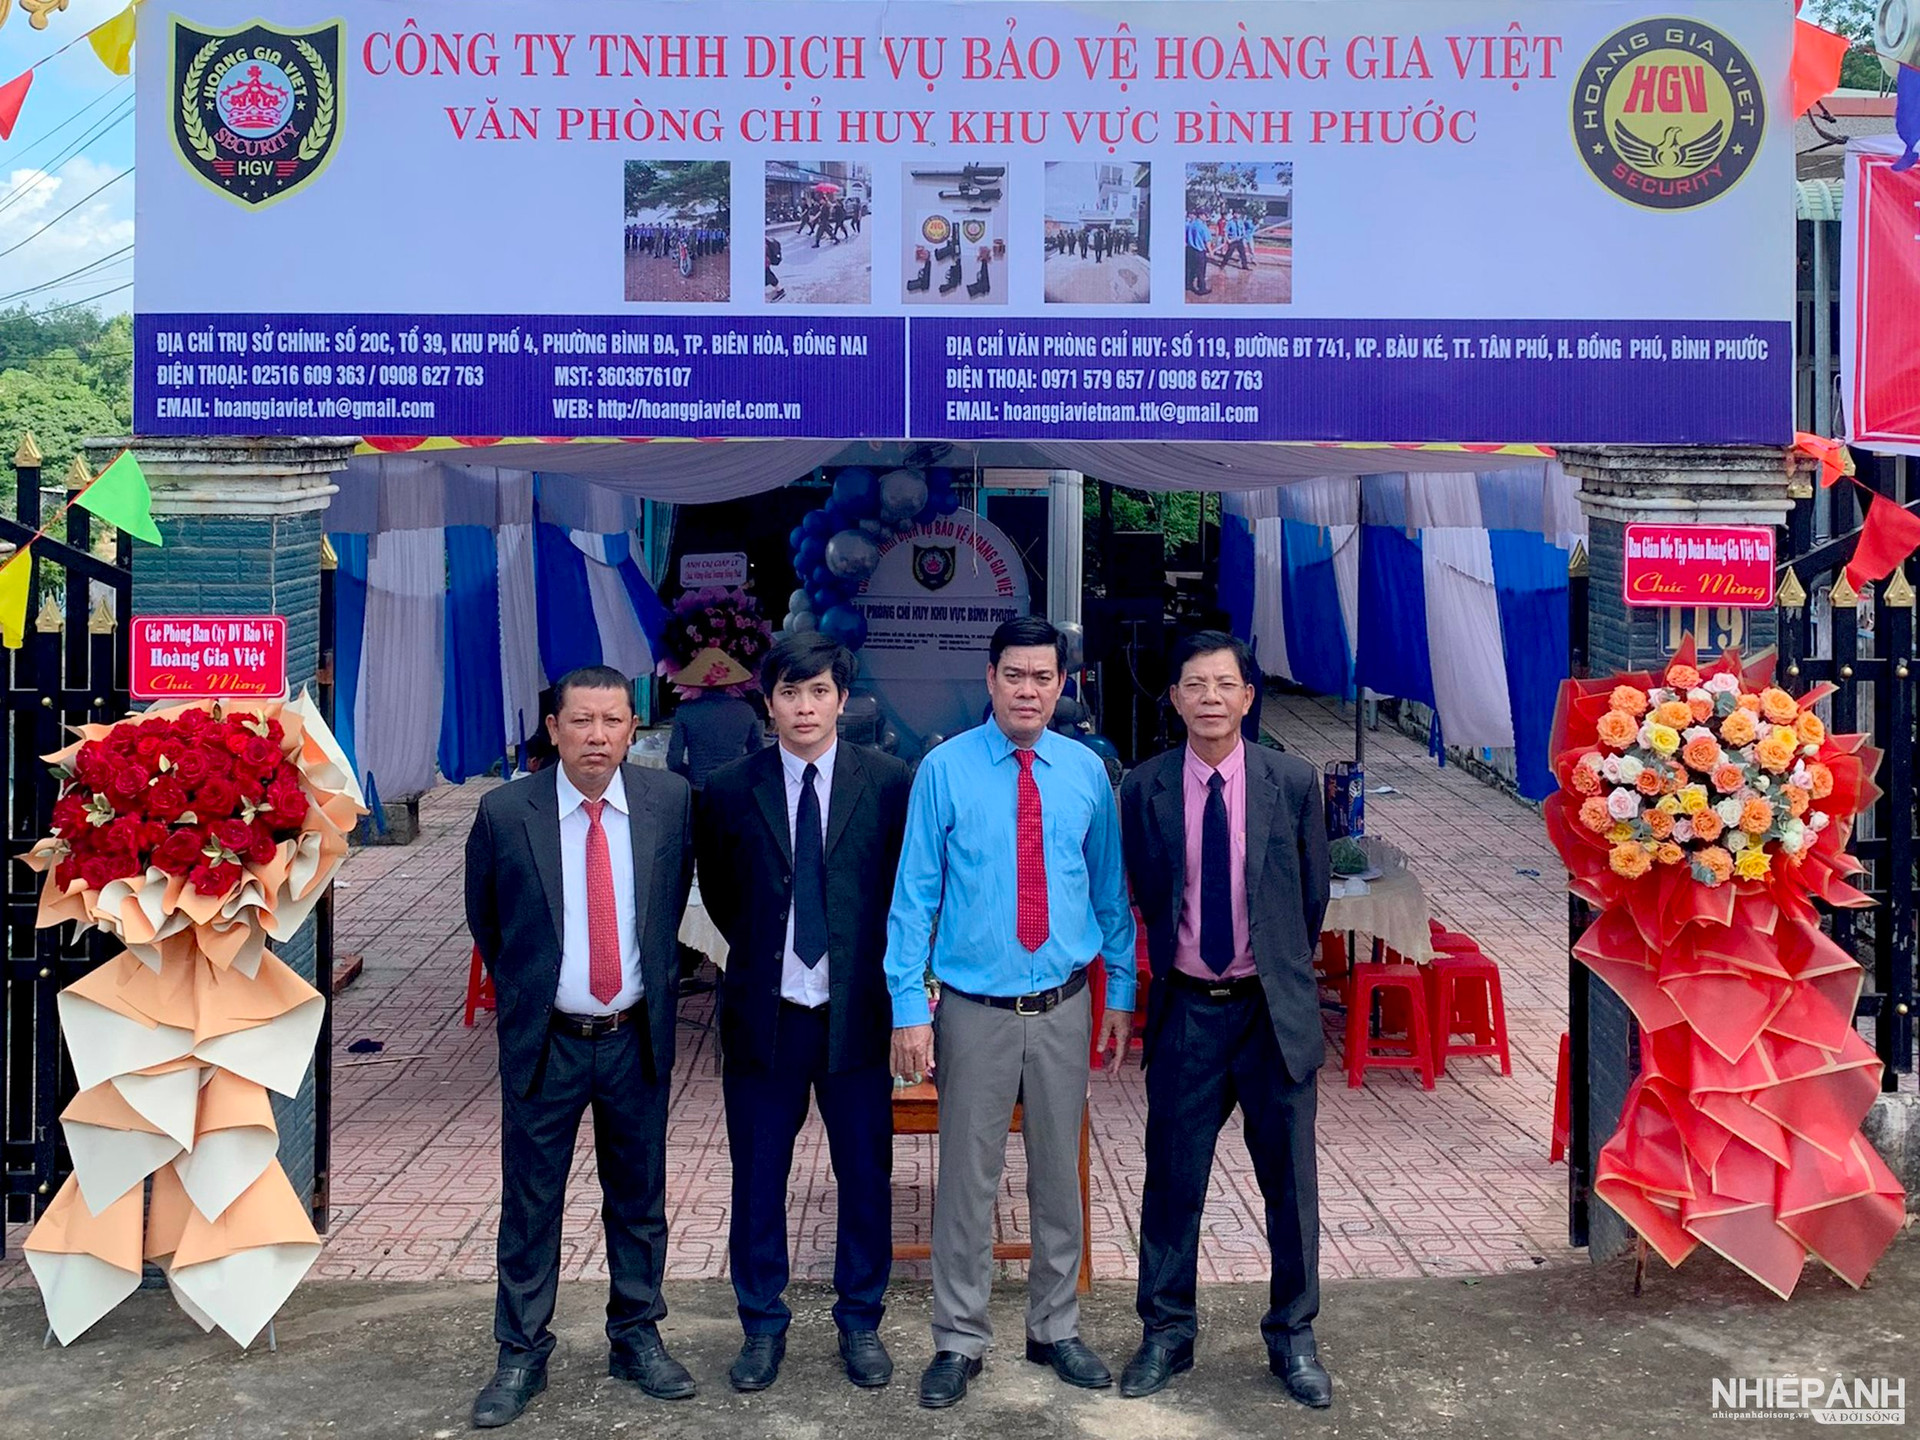 Công ty DV Bảo Vệ Hoàng Gia Việt khai trương văn phòng chỉ huy khu vực Bình Phước